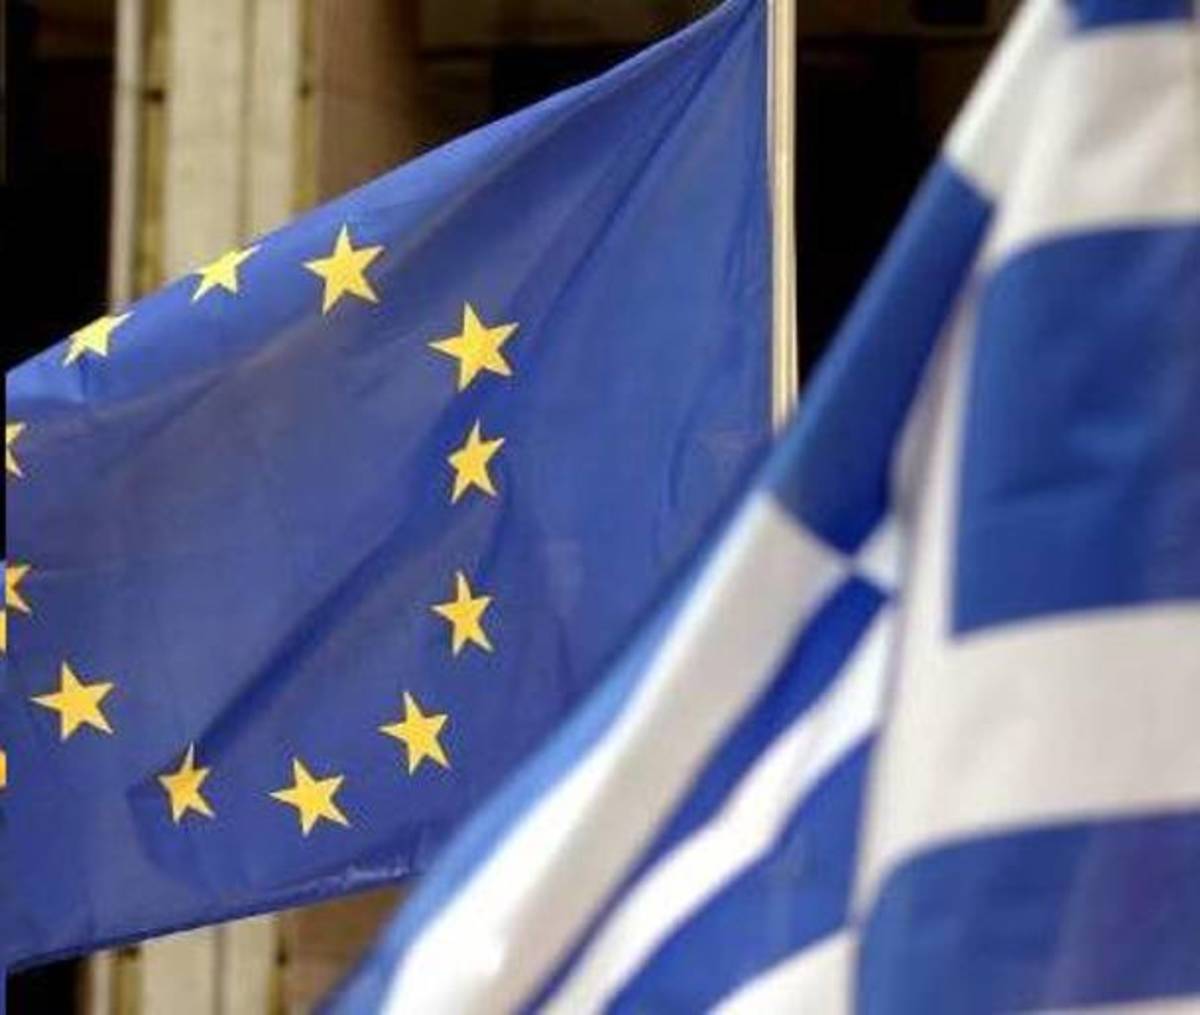 Ιστορικές στιγμές για την ελληνική και ευρωπαική οικονομία